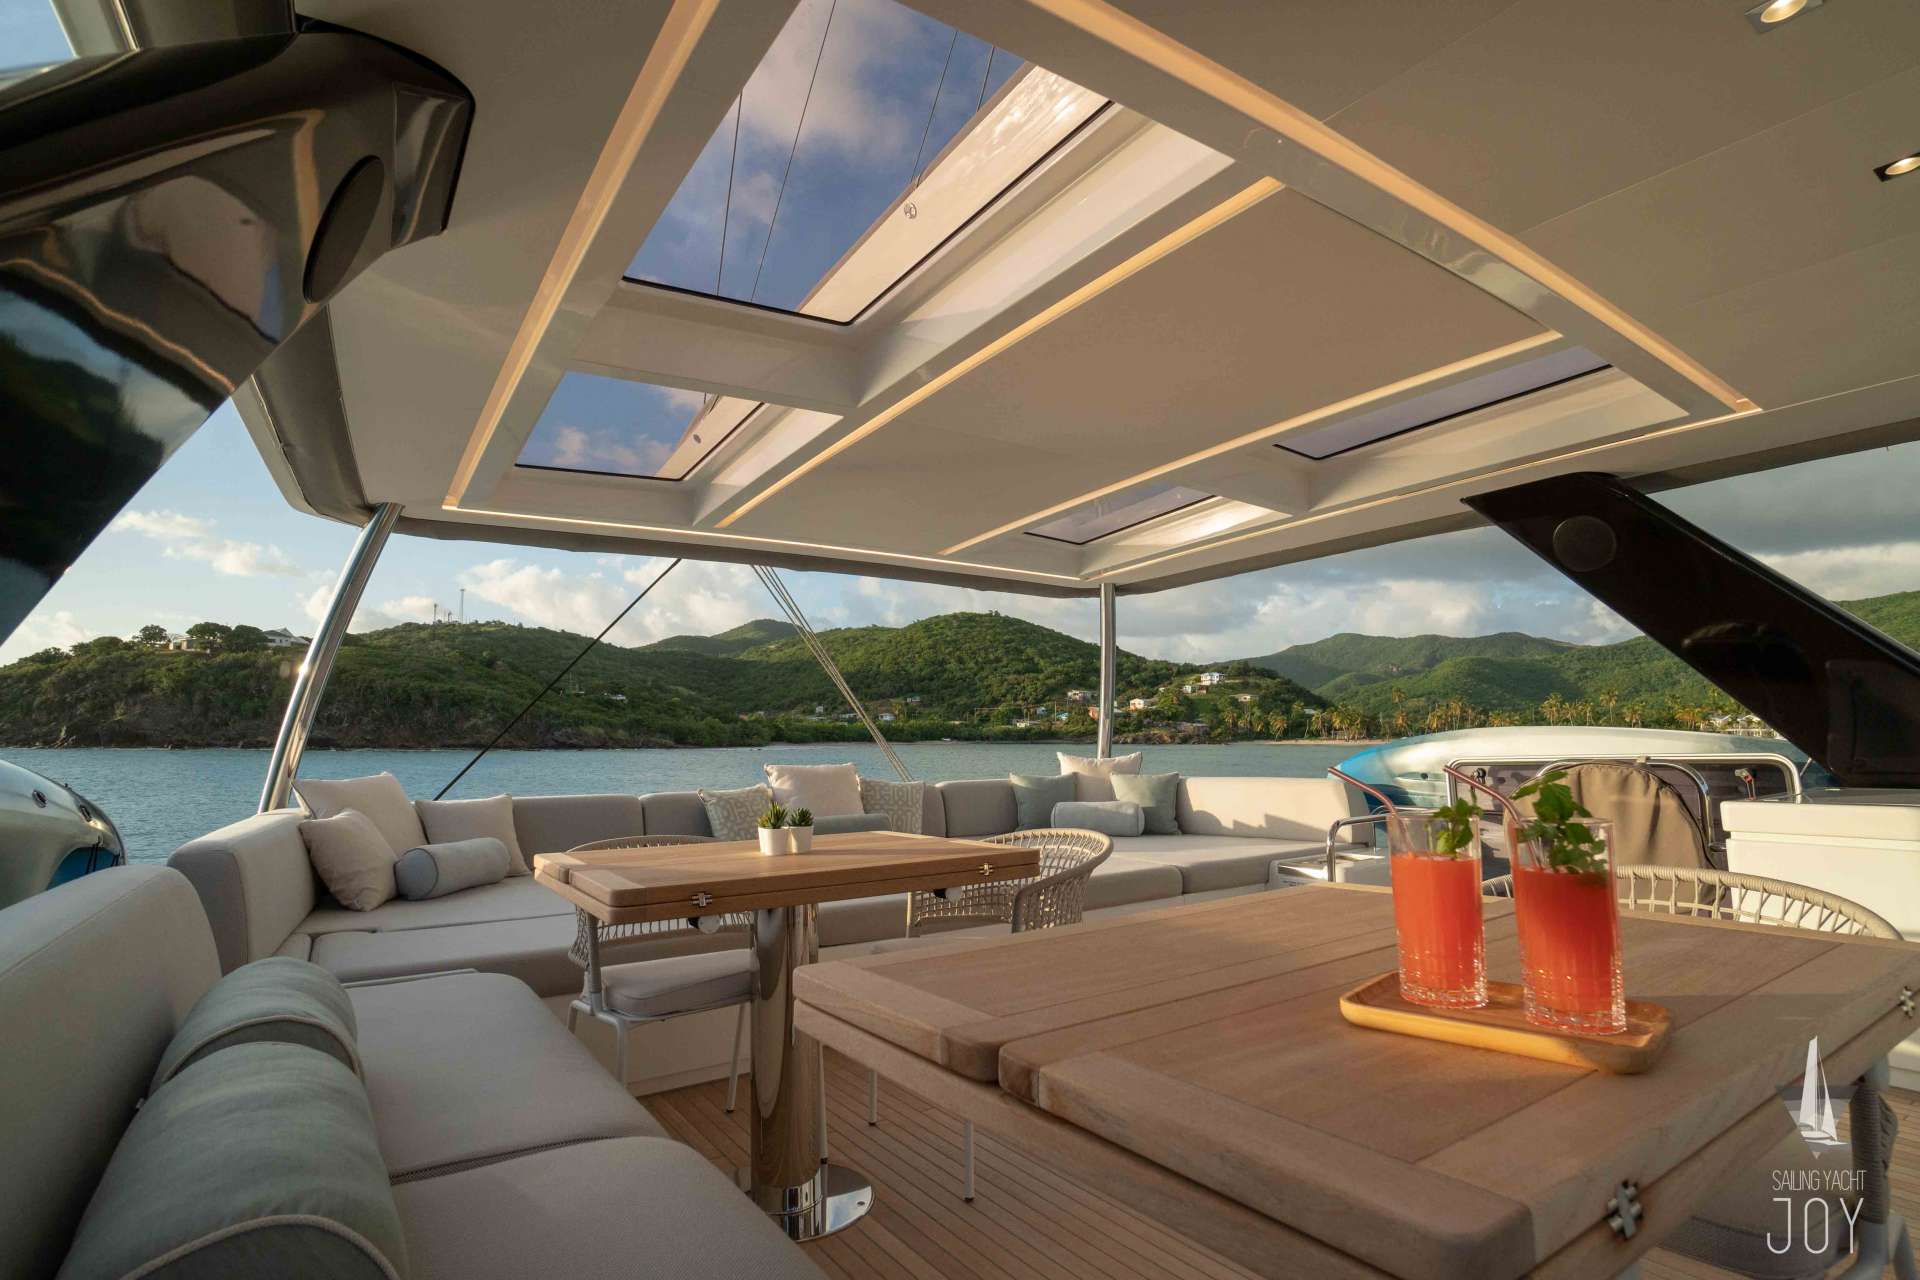 joy - Yacht Charter Uturoa & Boat hire in Caribbean and French Ploynesia 4